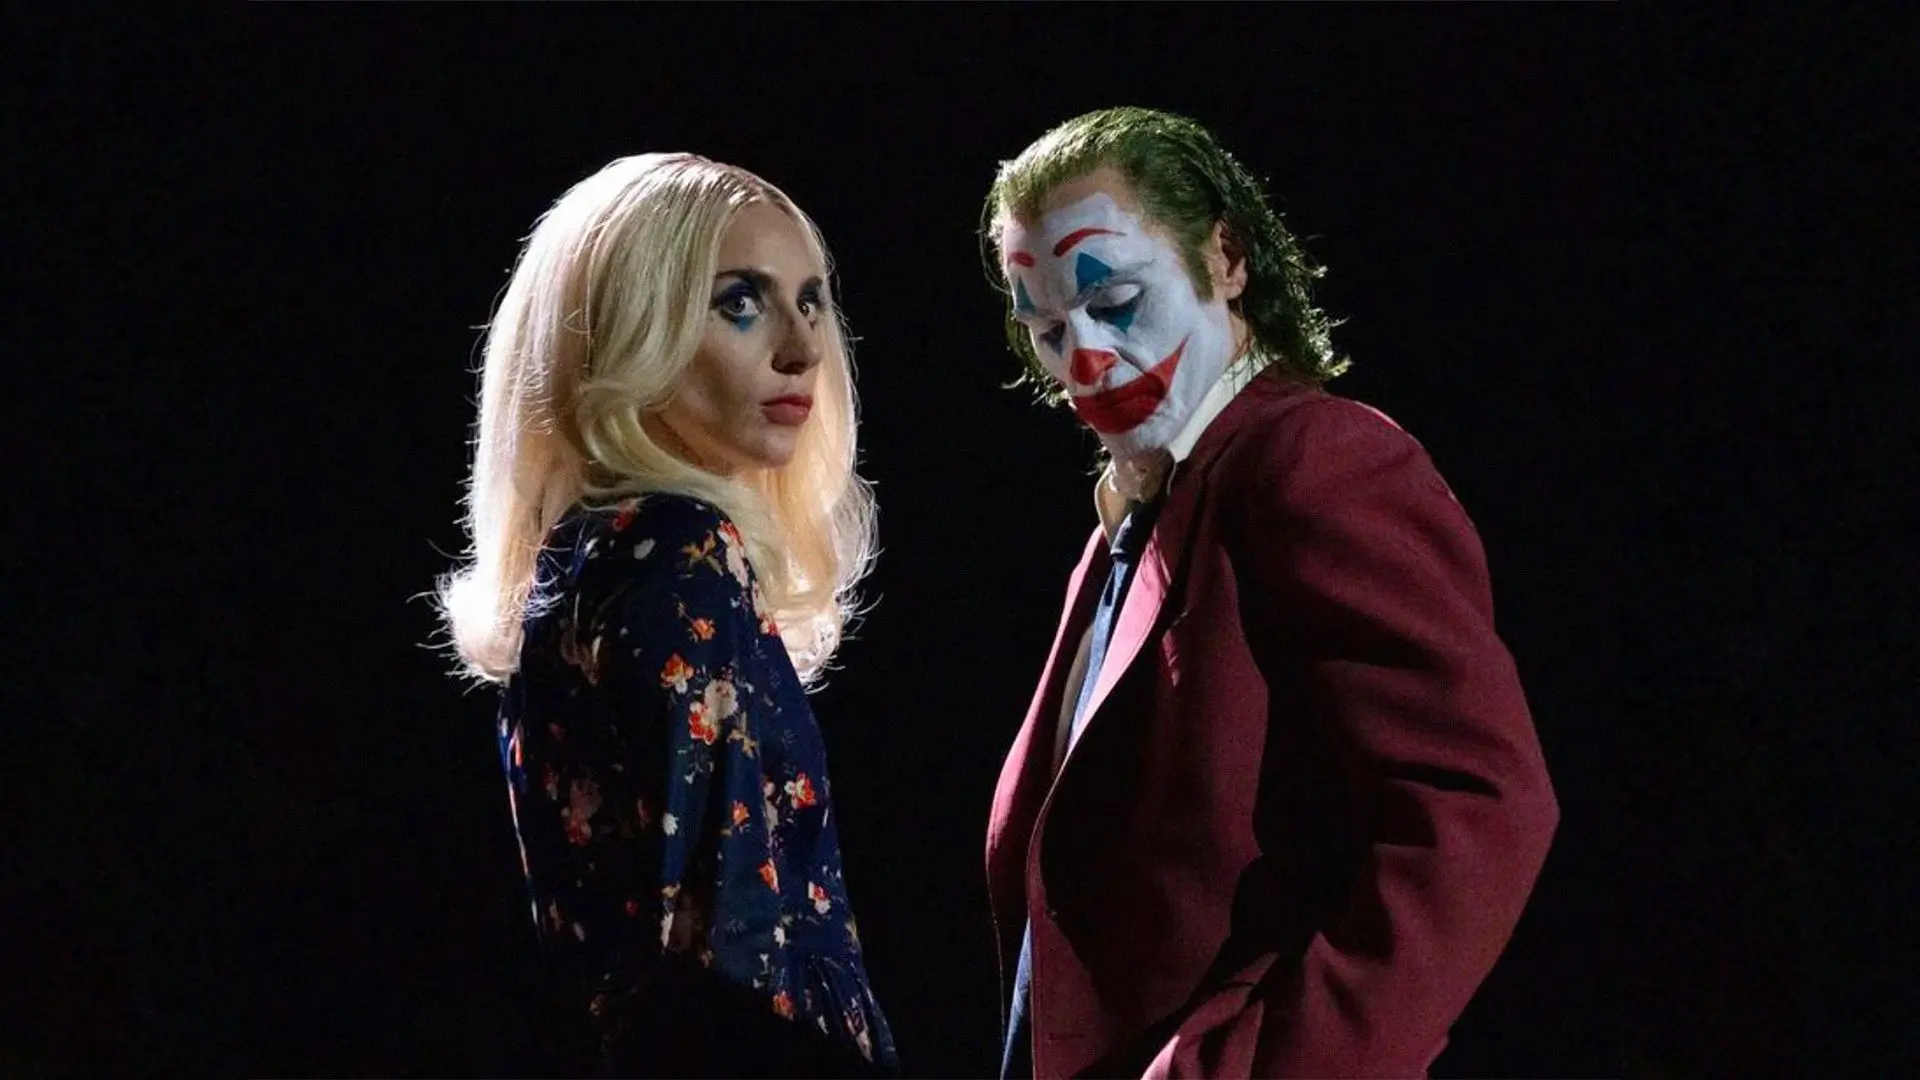 واکین فینیکس در نقش جوکر و لیدی گاگا در نقش هارلی کویین با بک گراند سیاه در فیلم Joker: Folie à Deux